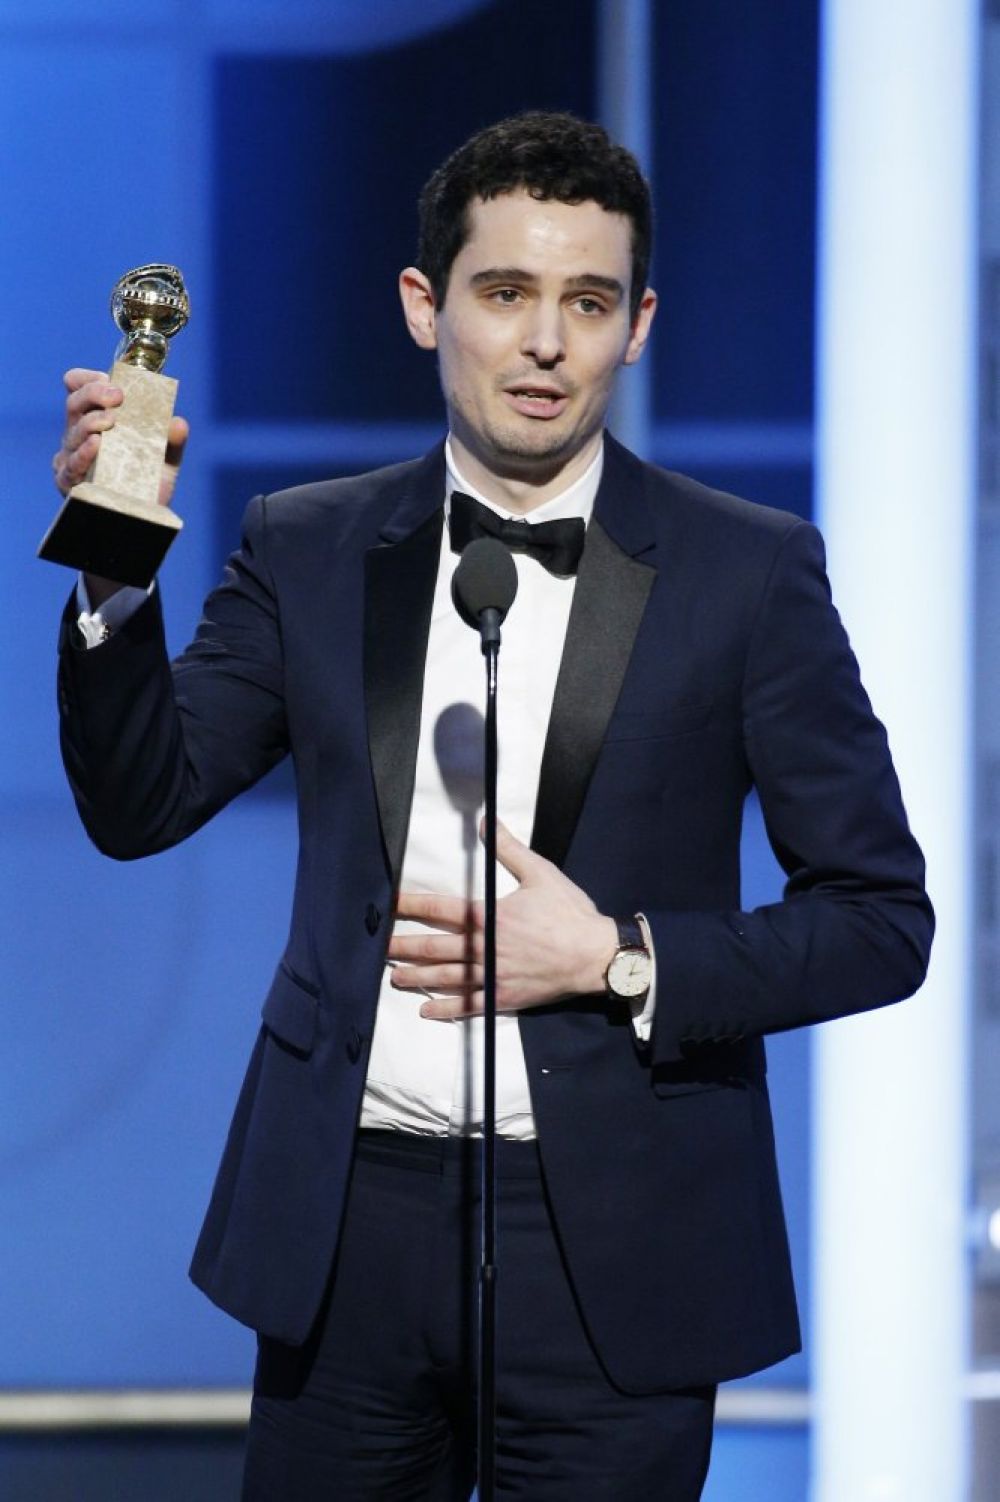 Дэмьен Шазелл получил две награды за лучшую режиссерскую работу и лучший сценарий за мюзикл «Ла-Ла Ленд».